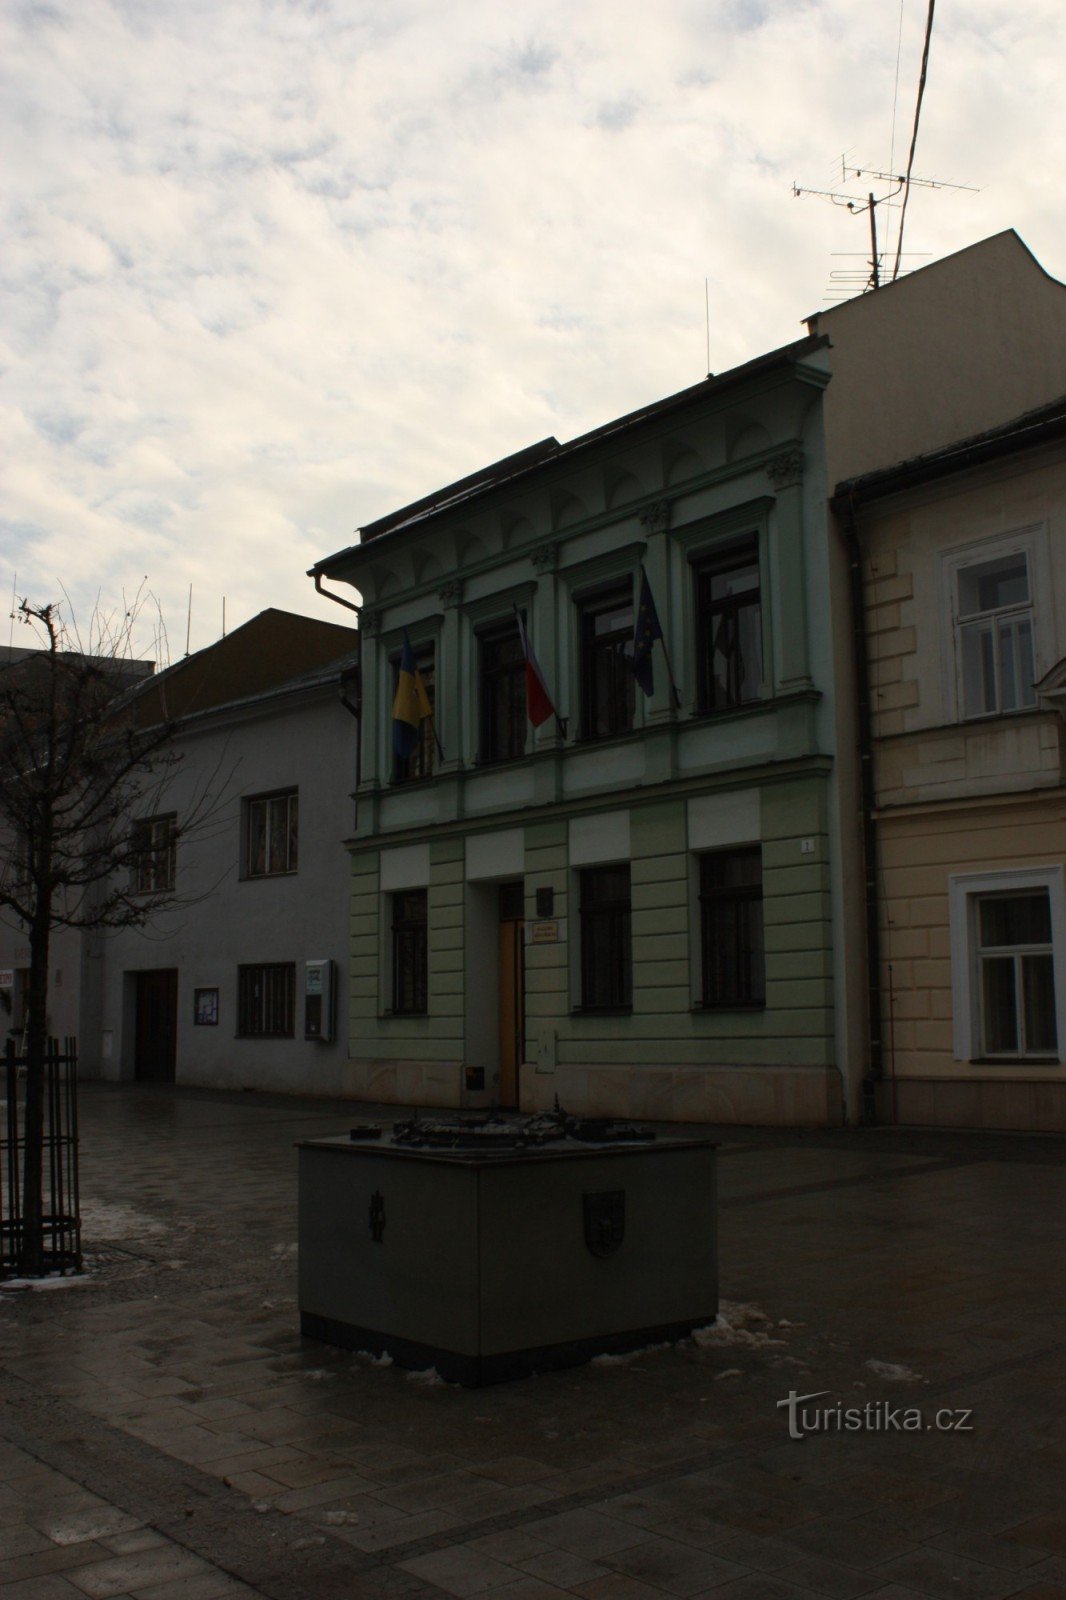 Mô hình bằng đồng của thành phố Přerov trên quảng trường TG Masaryk ở Přerov